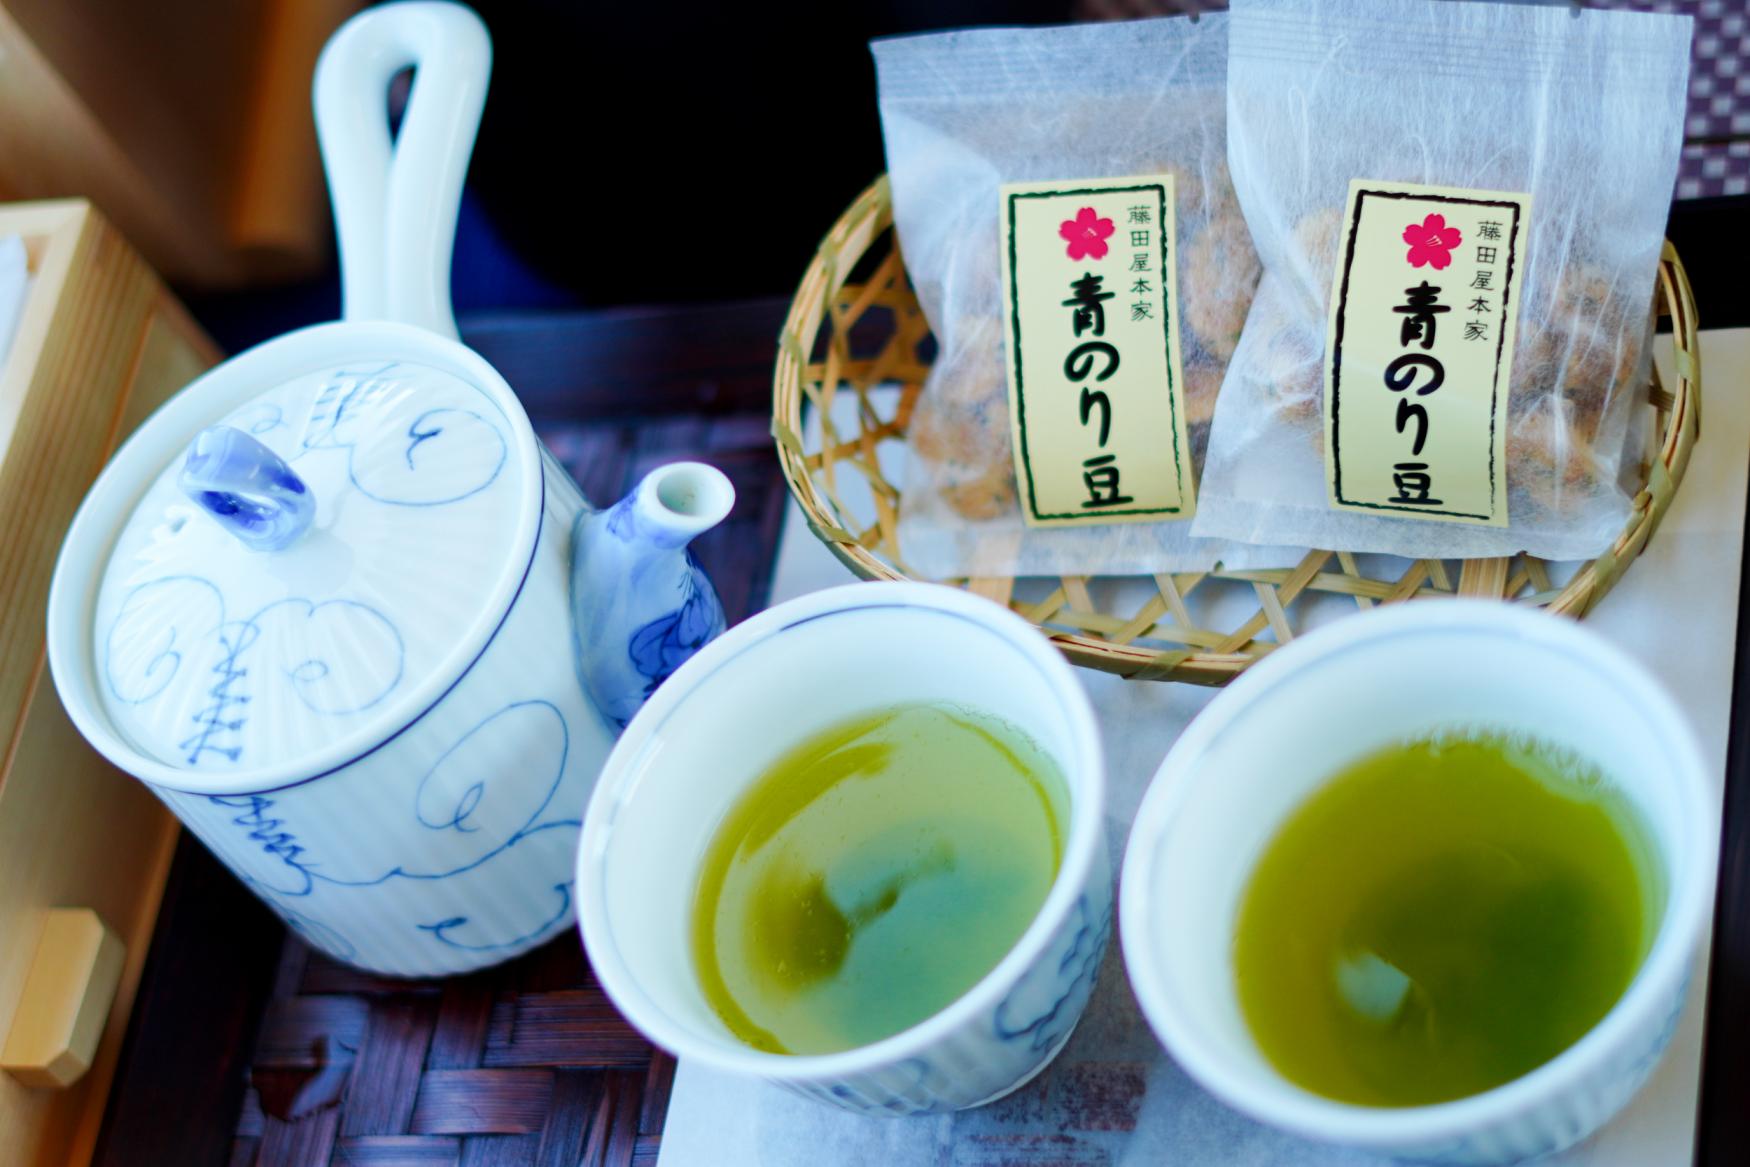 まずは日本茶でほっと一息。-0